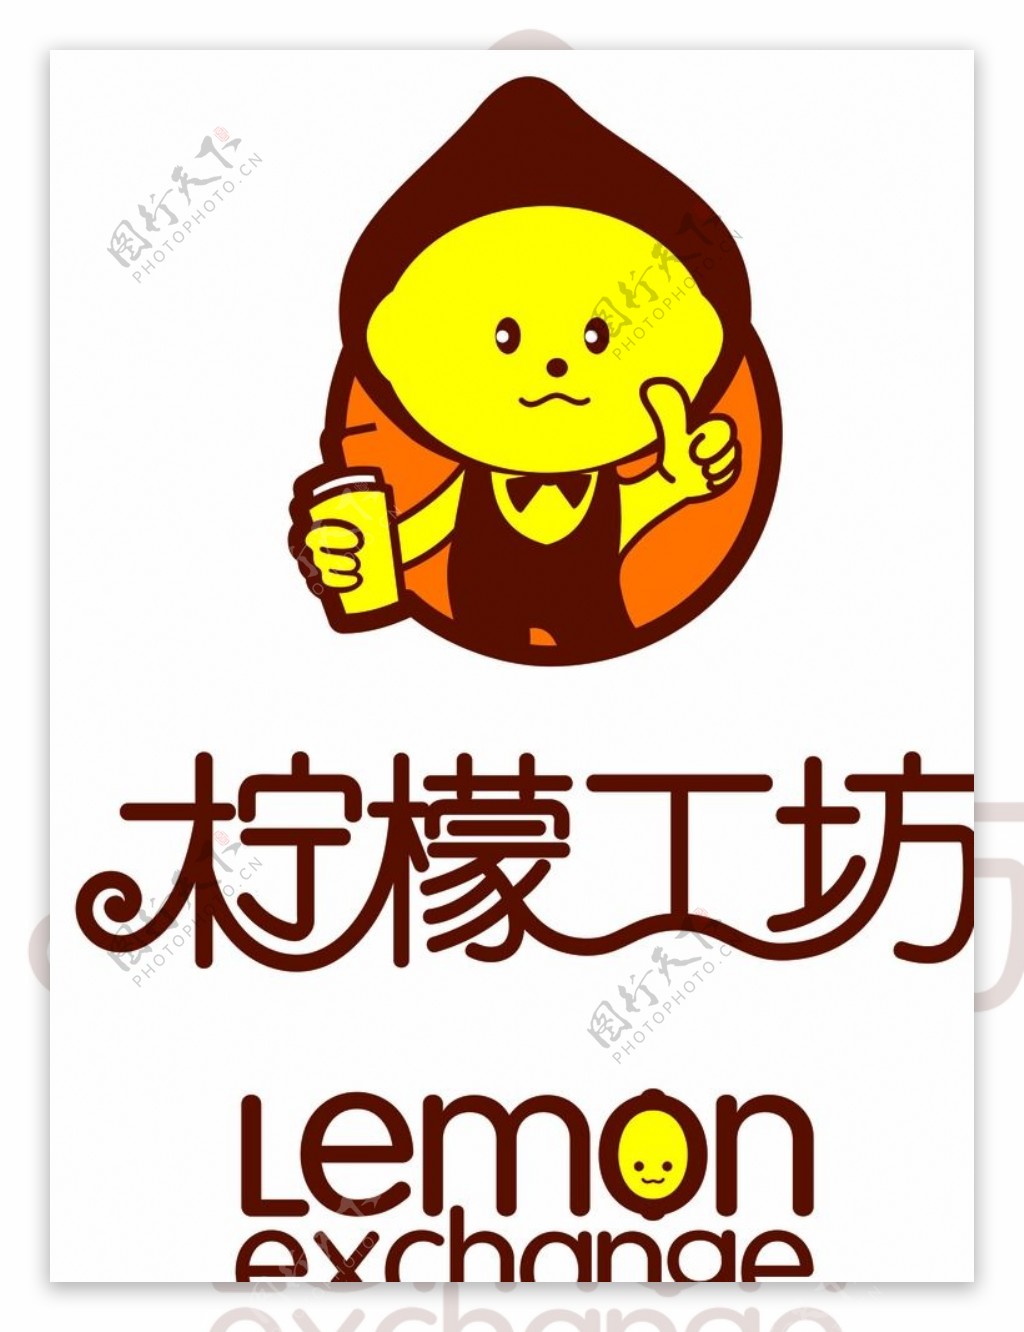 柠檬工坊logo